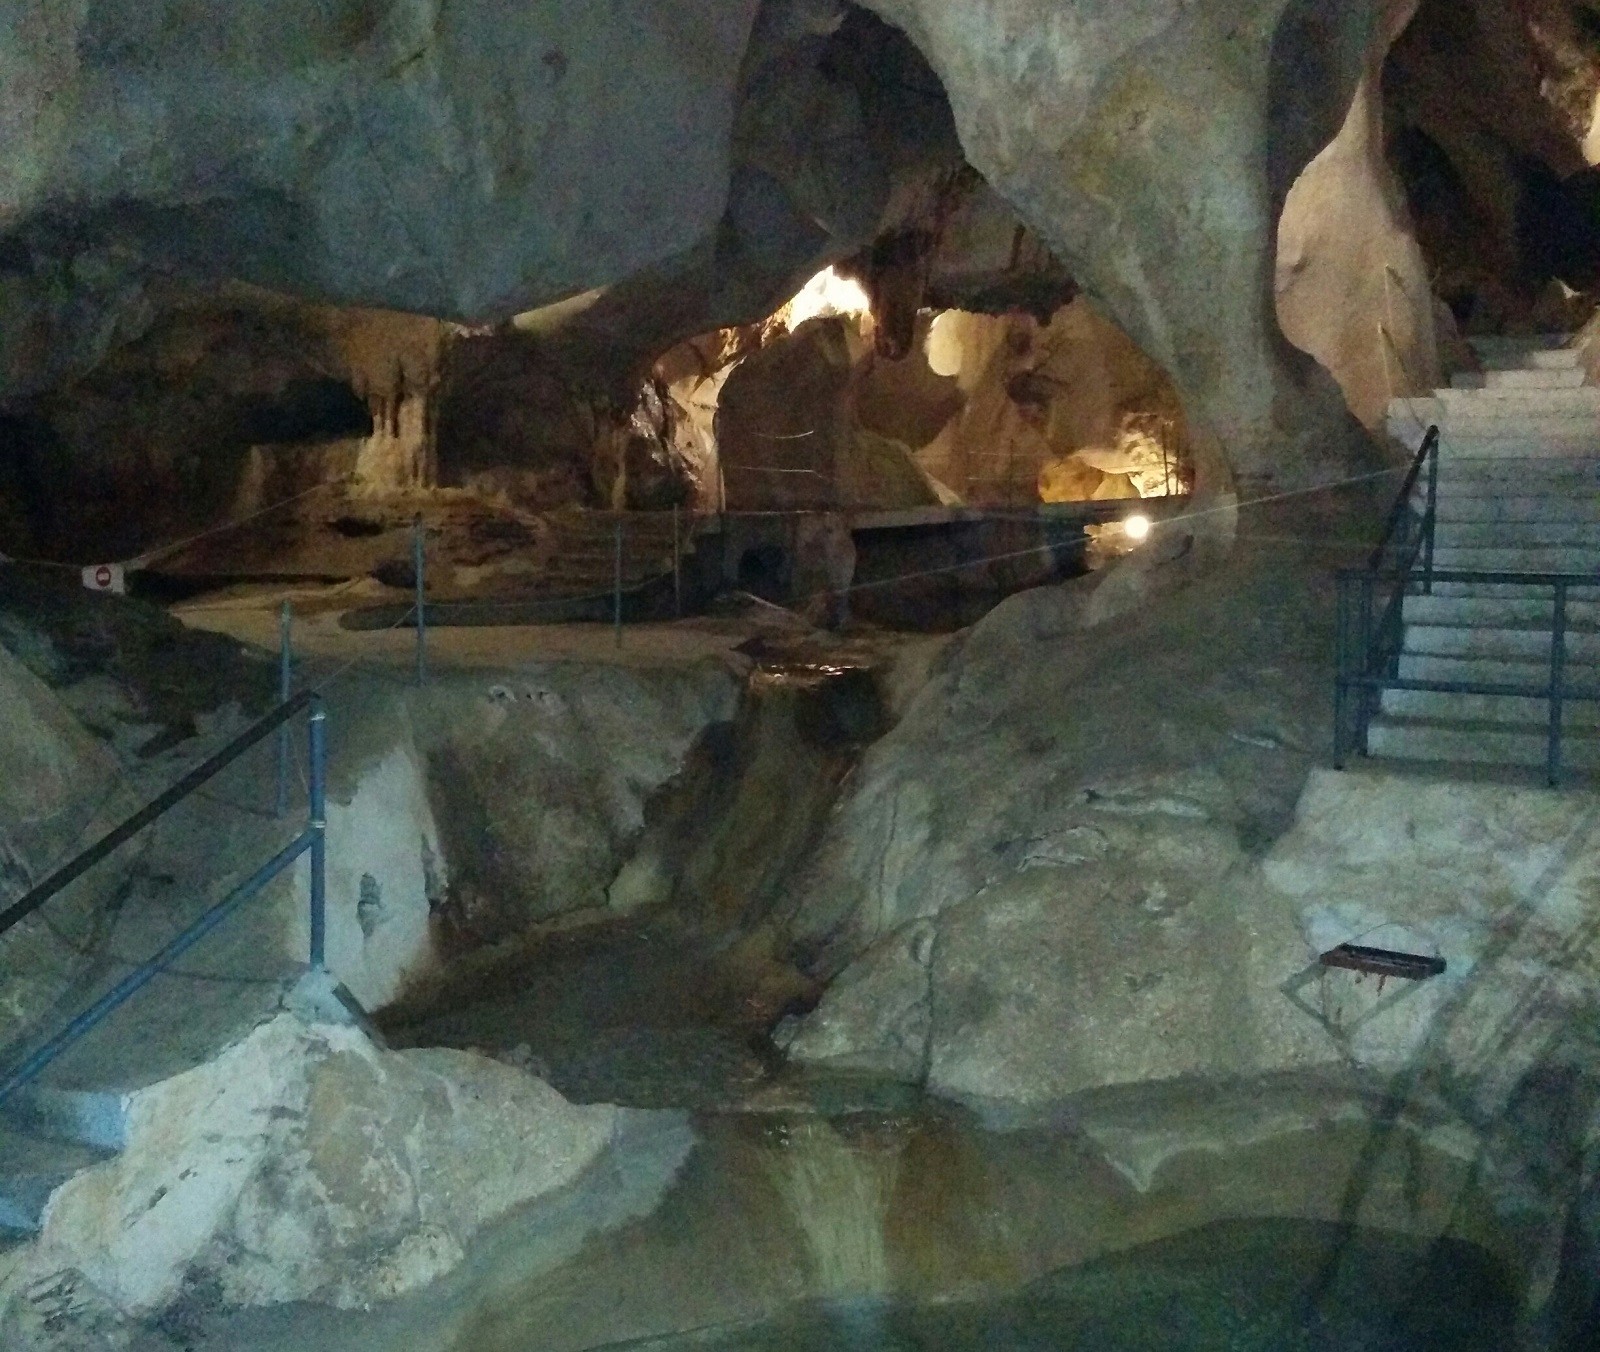 Jaskinia pełna skarbów. Archeolodzy zachwyceni niezwykłą bronią dawnych mieszkańców